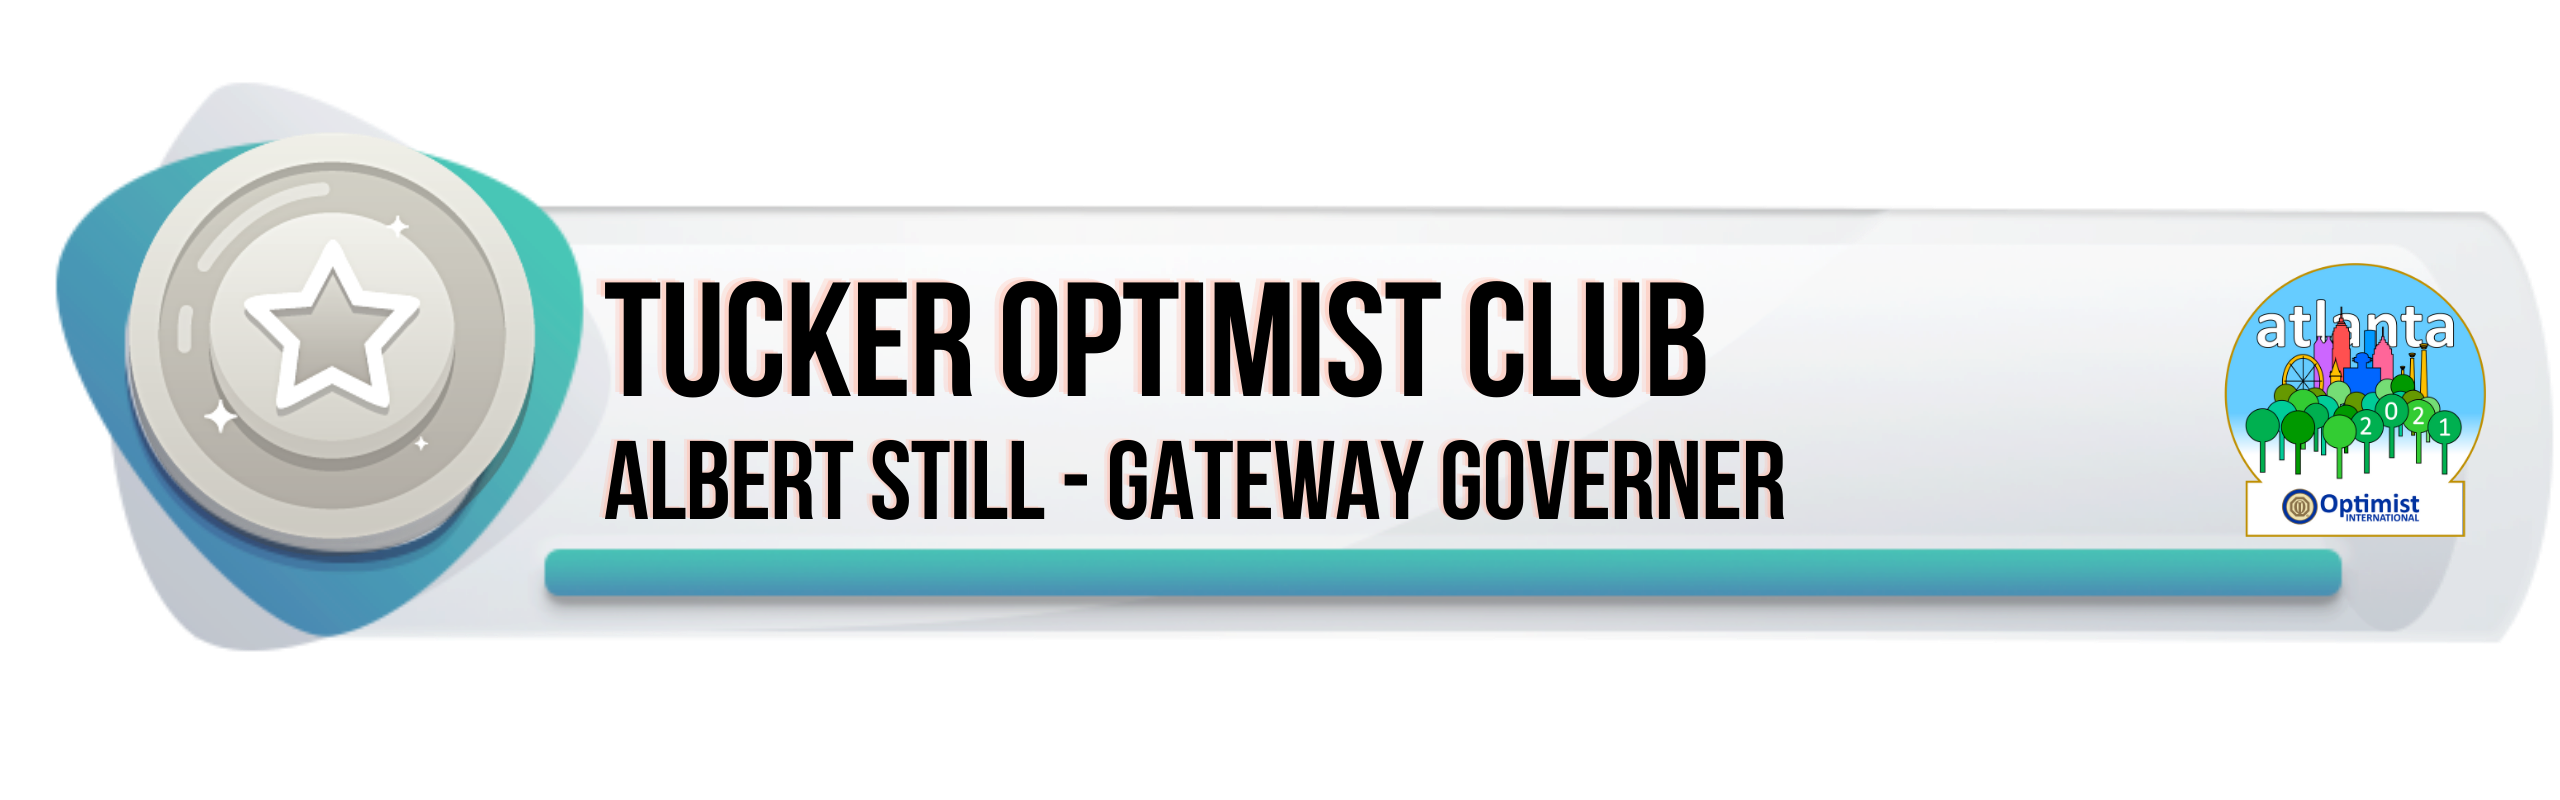 Tucker optimist club